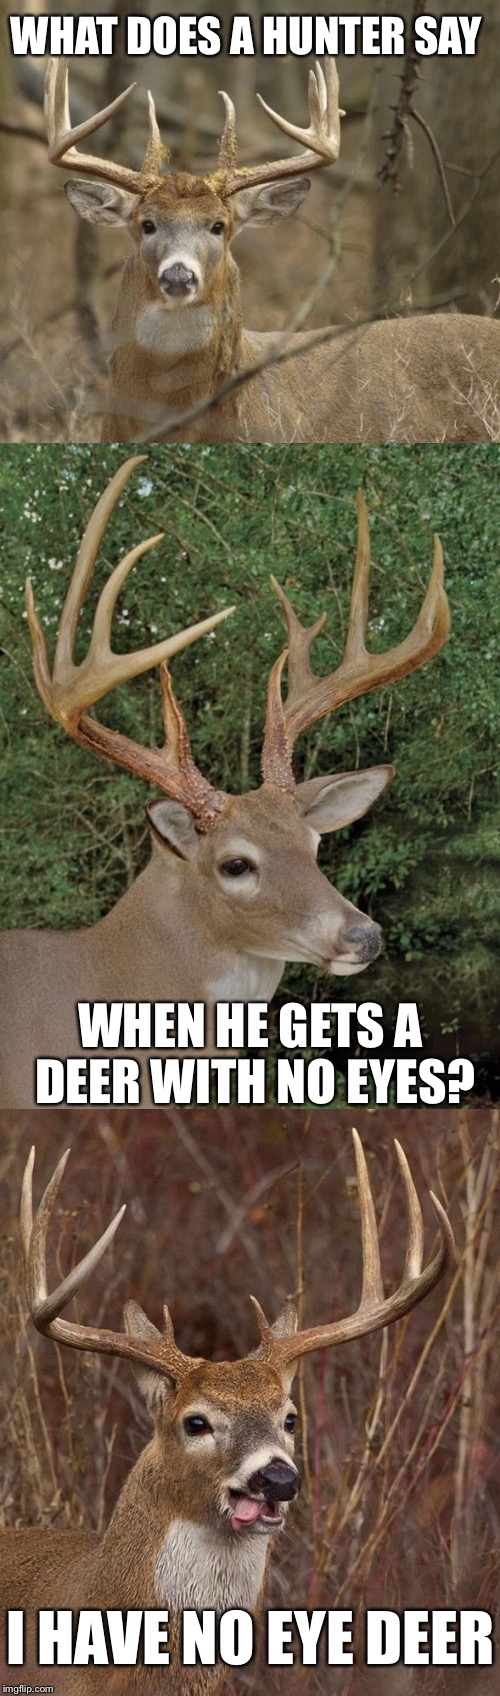 deer oops meme